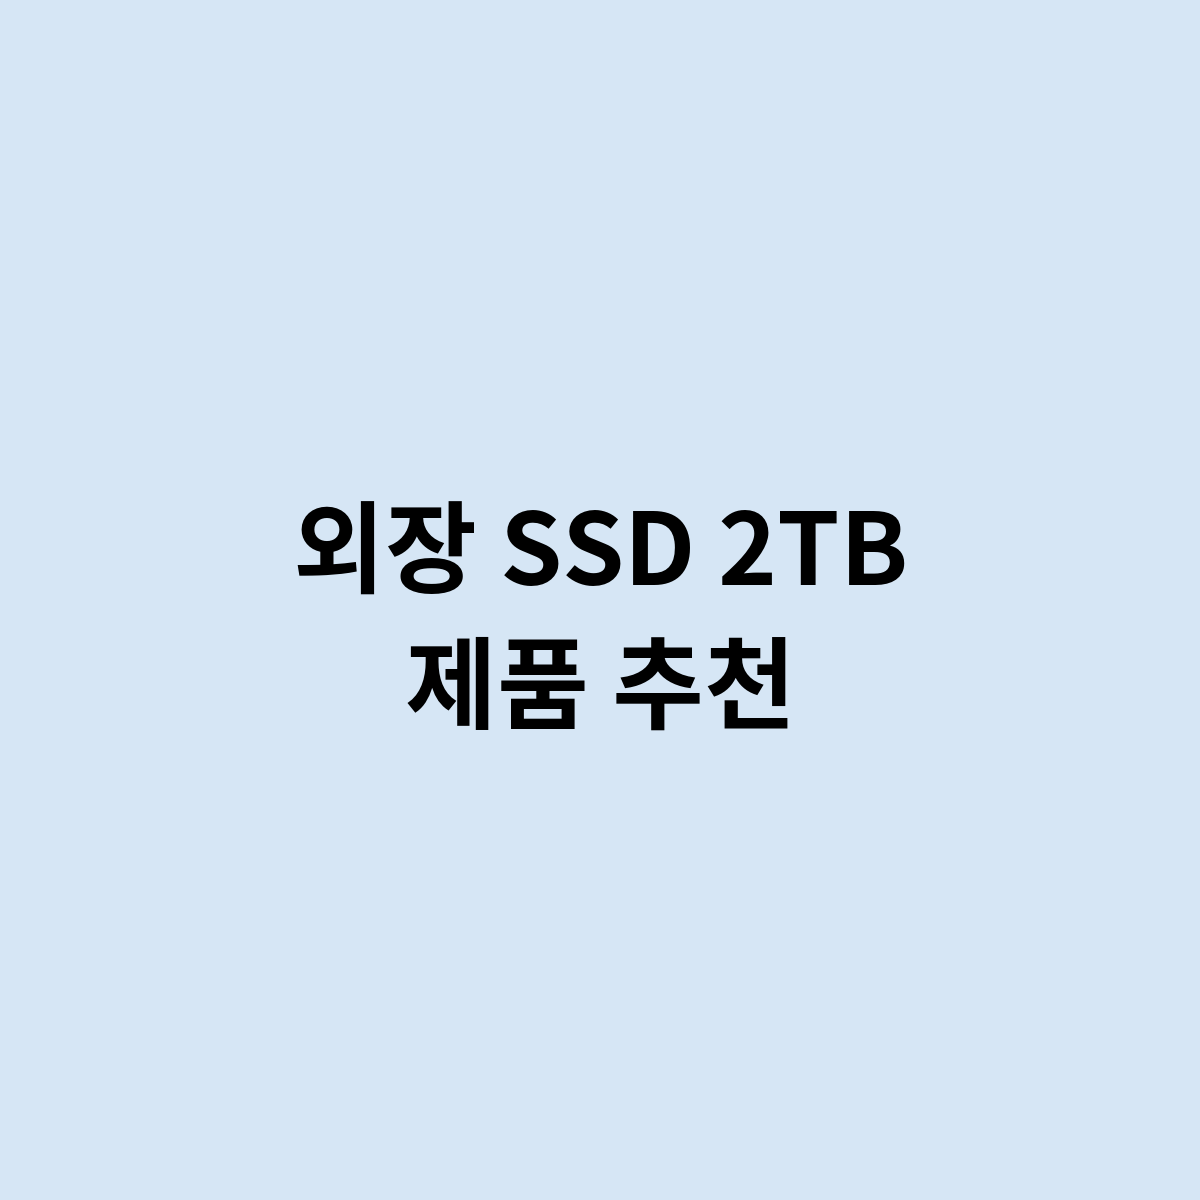 외장 SSD 2TB 제품 추천하는 제품은 어떻게 되나요 ?